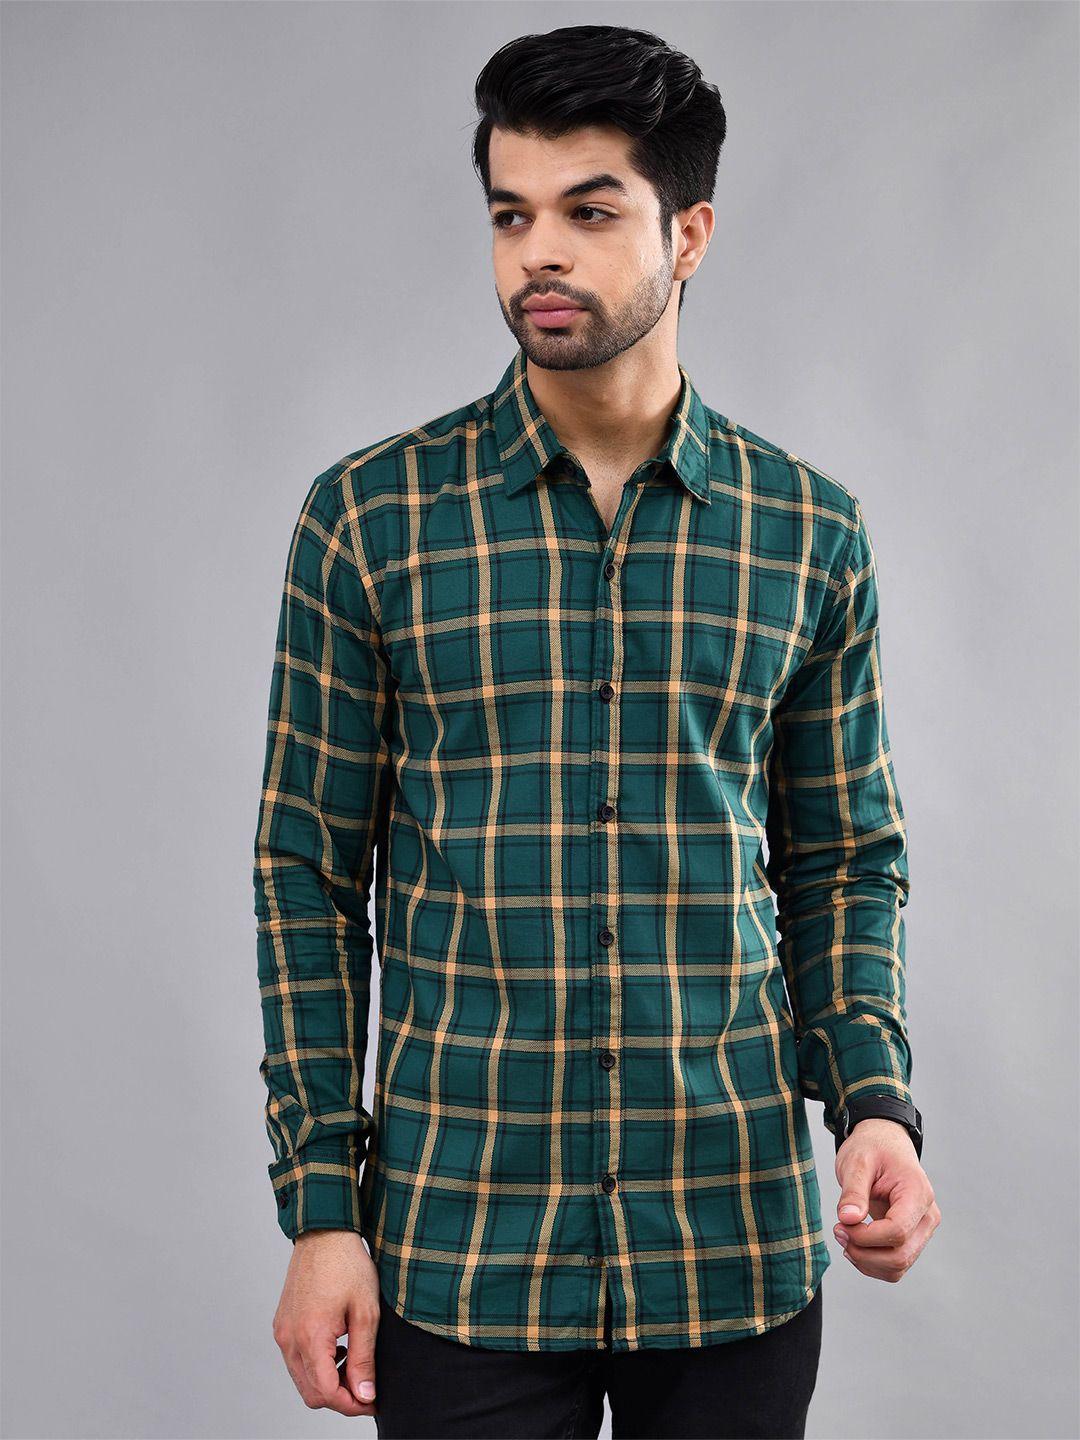 dezano-men-green-modern-tartan-checks-opaque-checked-casual-shirt